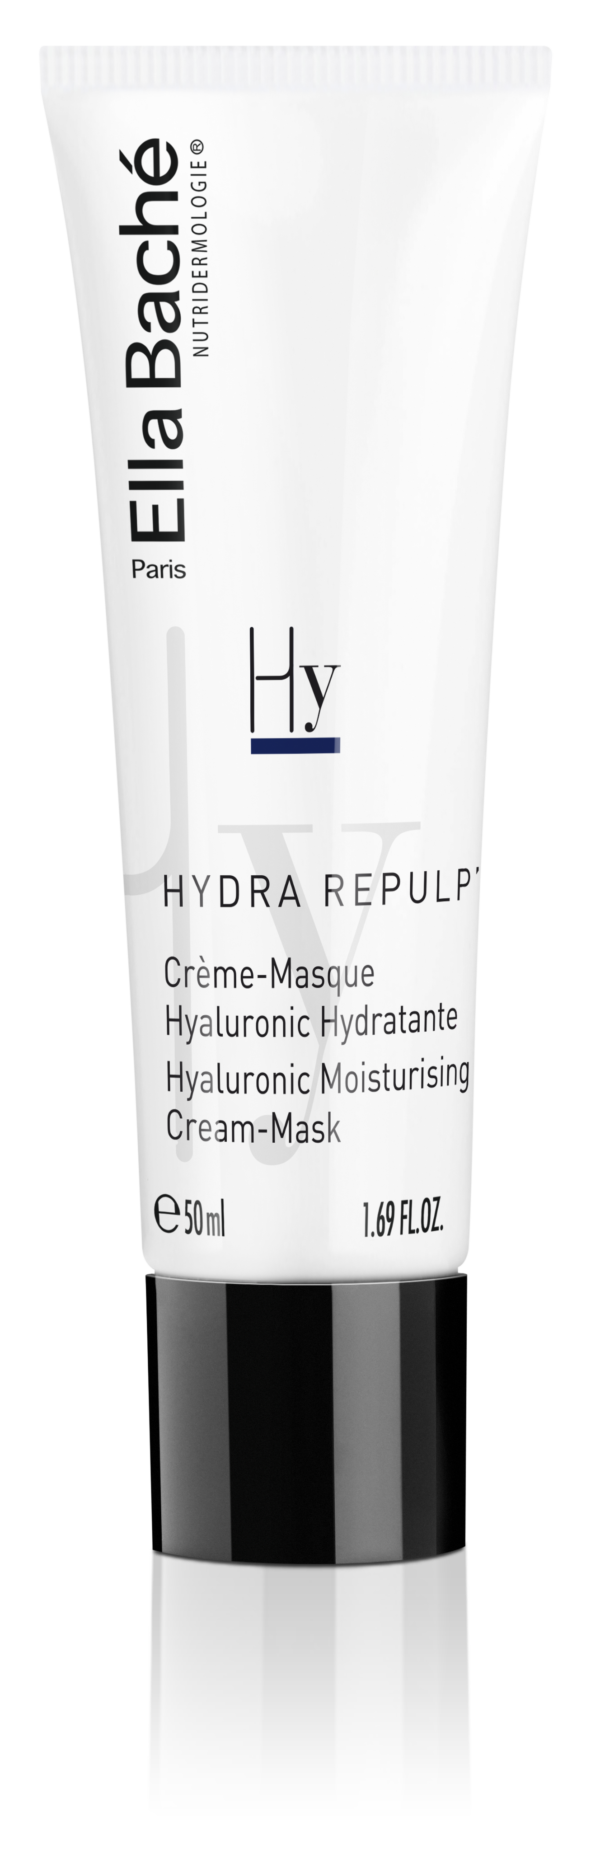 4533 kremova hydratacni maska s kyselinou hyaluronovou